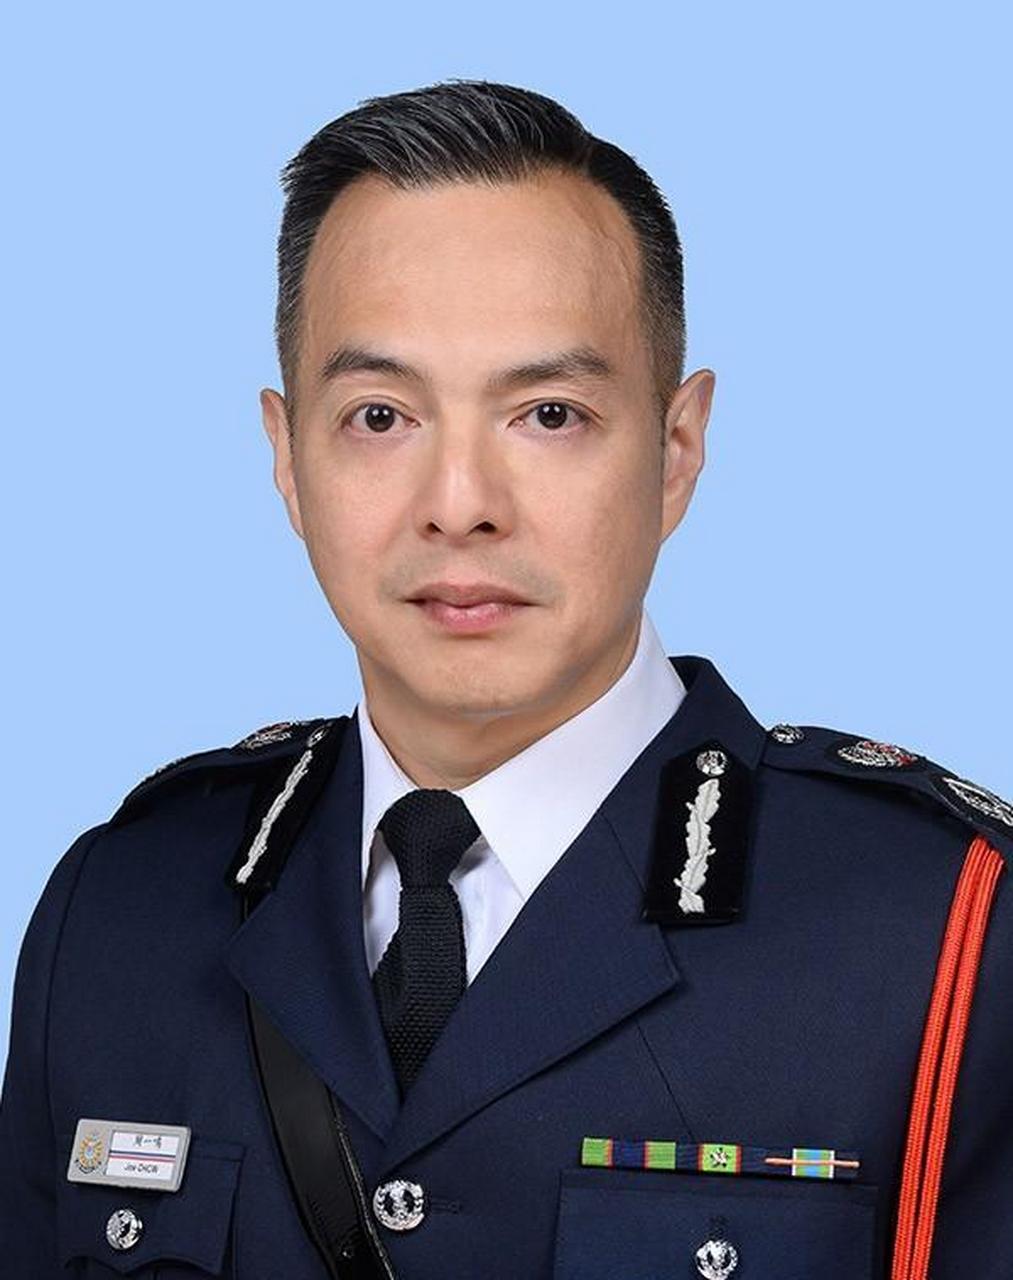 宪委级 警务处处长:香港警务处最高长官,为香港特区政府主要官员之一